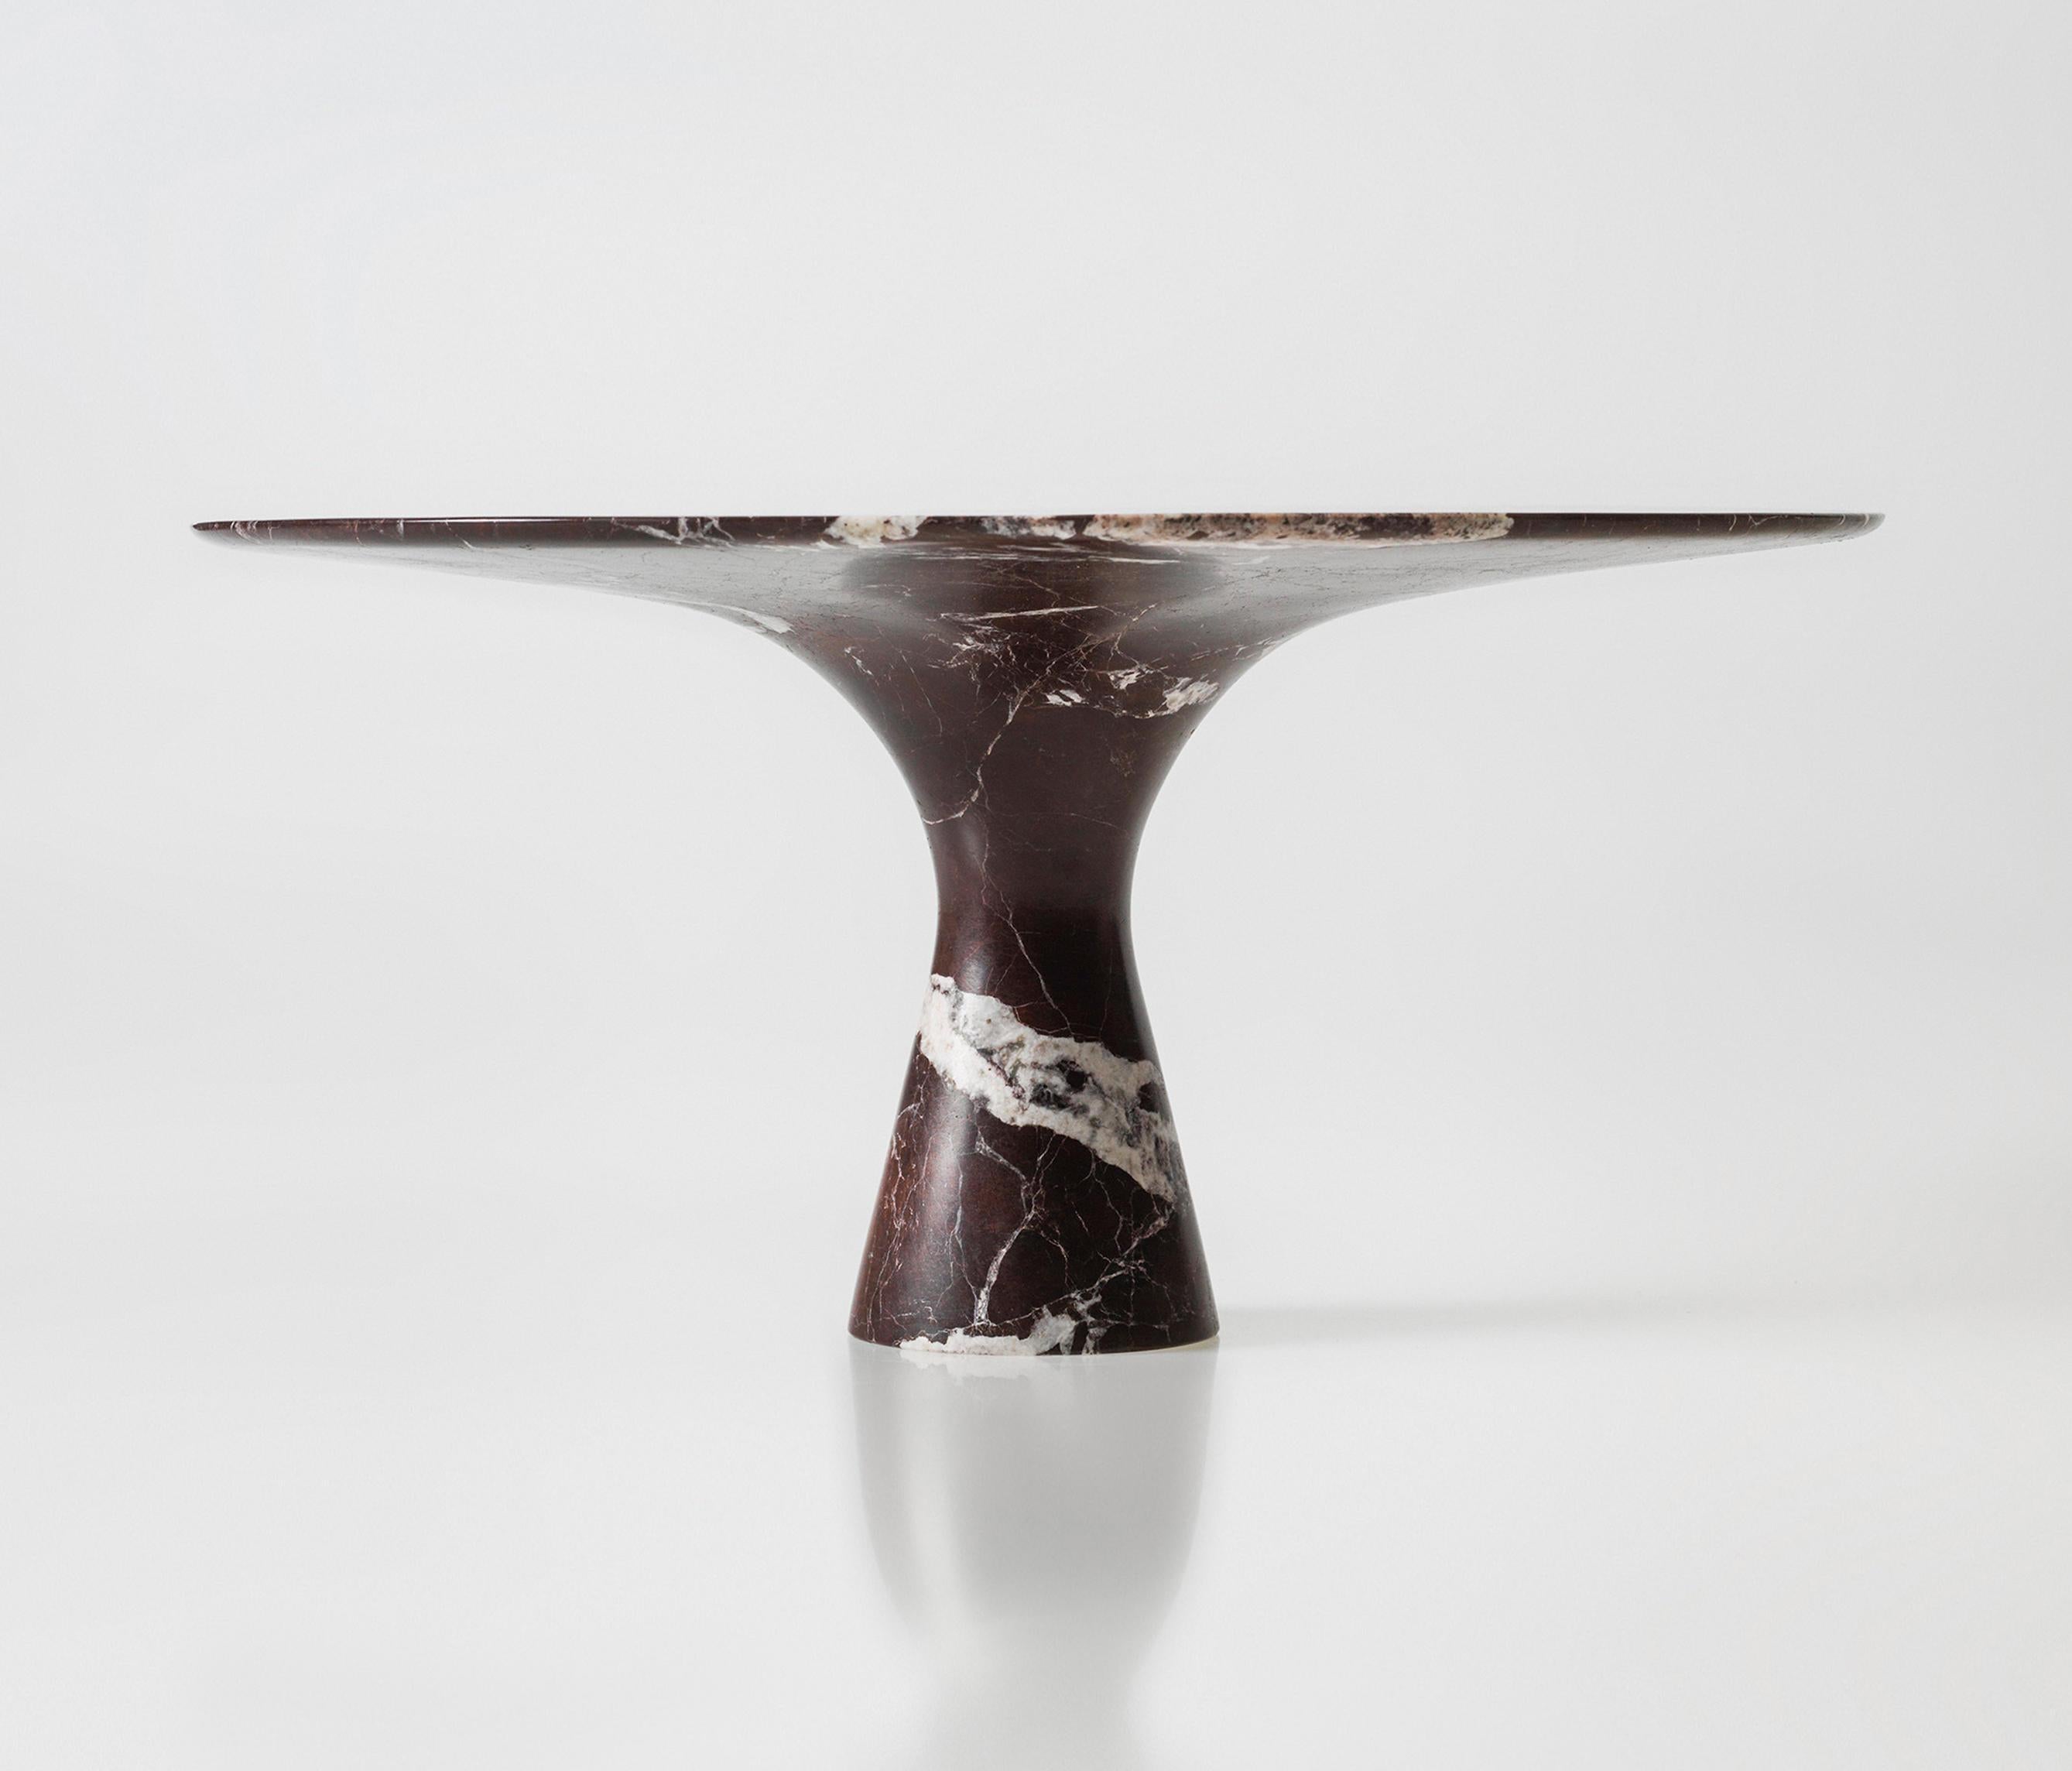 Rosso Lepanto Table ovale raffinée en marbre de style contemporain 210/75
Dimensions : 210 x 75 cm
Matériaux : Rosso Lepanto

Angelo est l'essence même d'une table ronde en pierre naturelle, une forme sculpturale dans un matériau robuste aux lignes